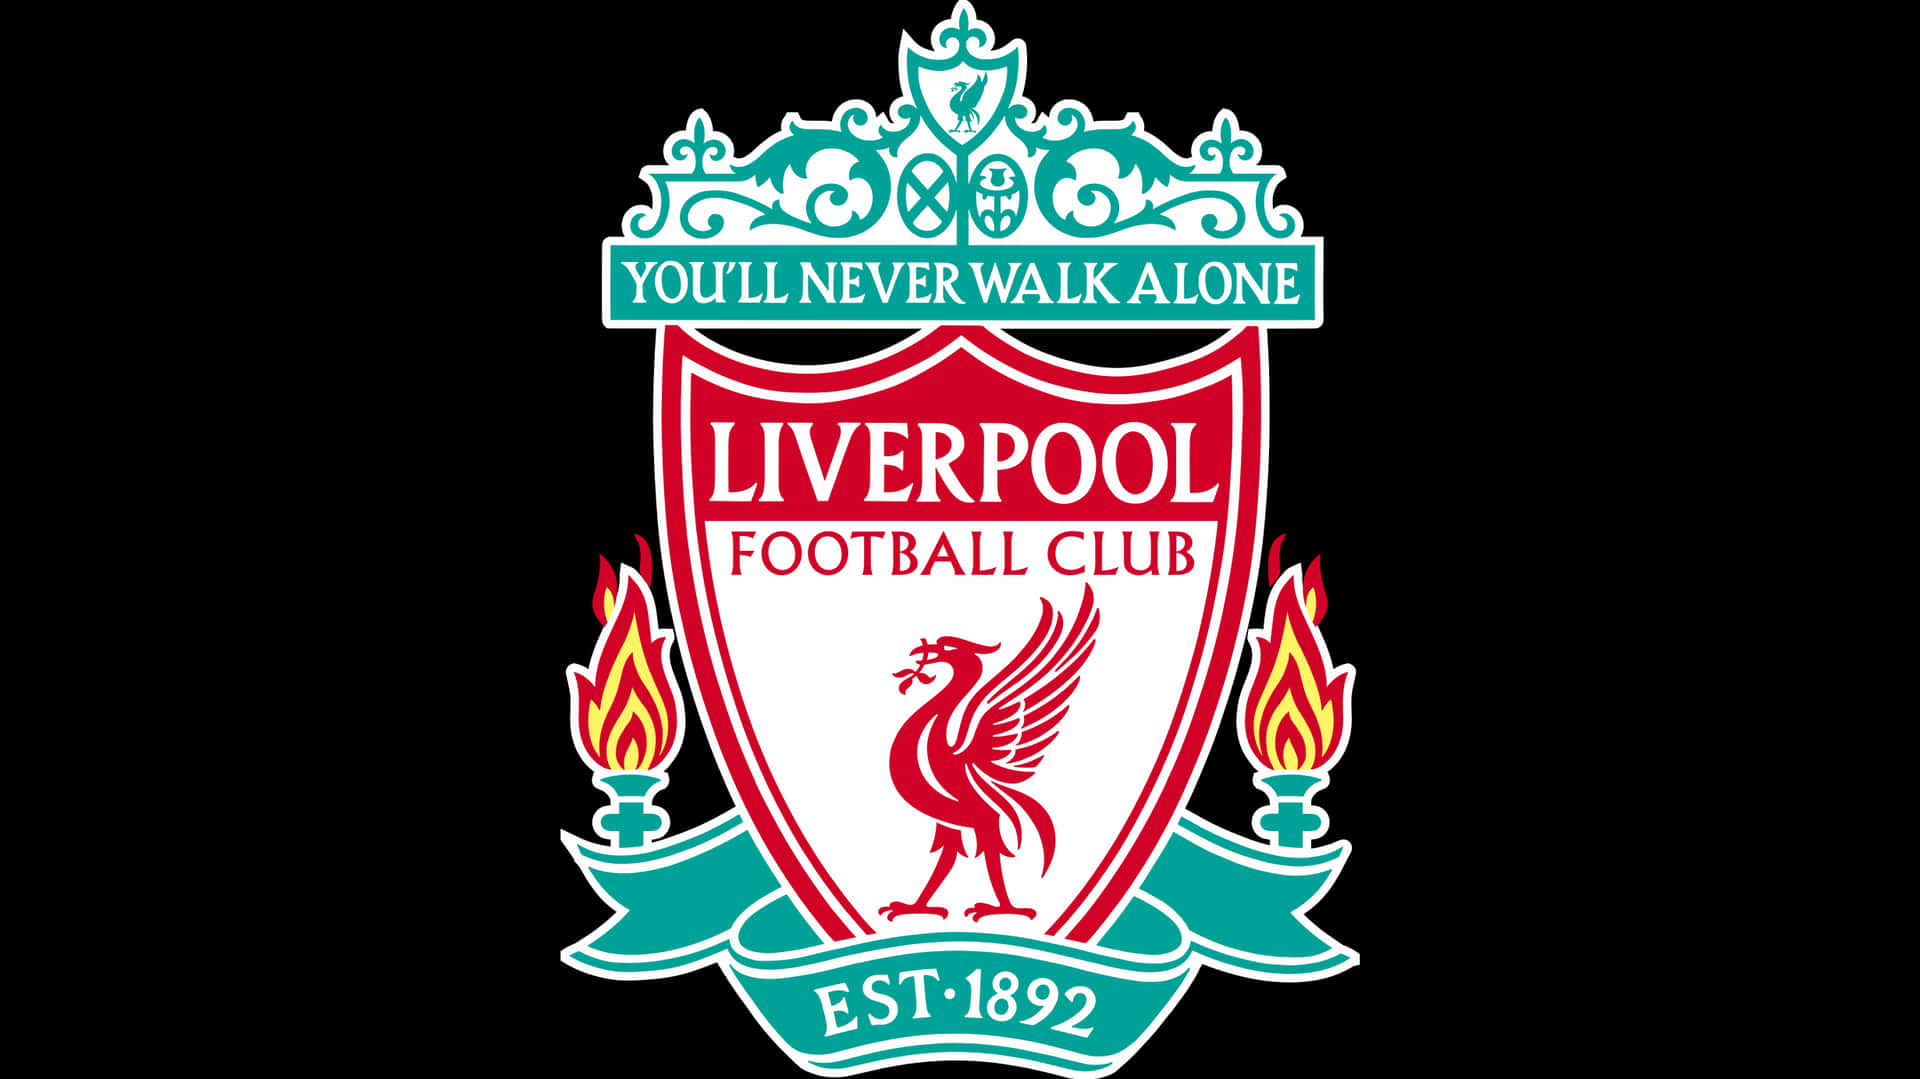 !Embracer din lidenskab og repræsenterer Liverpool F.C. på din skrivebord! Wallpaper